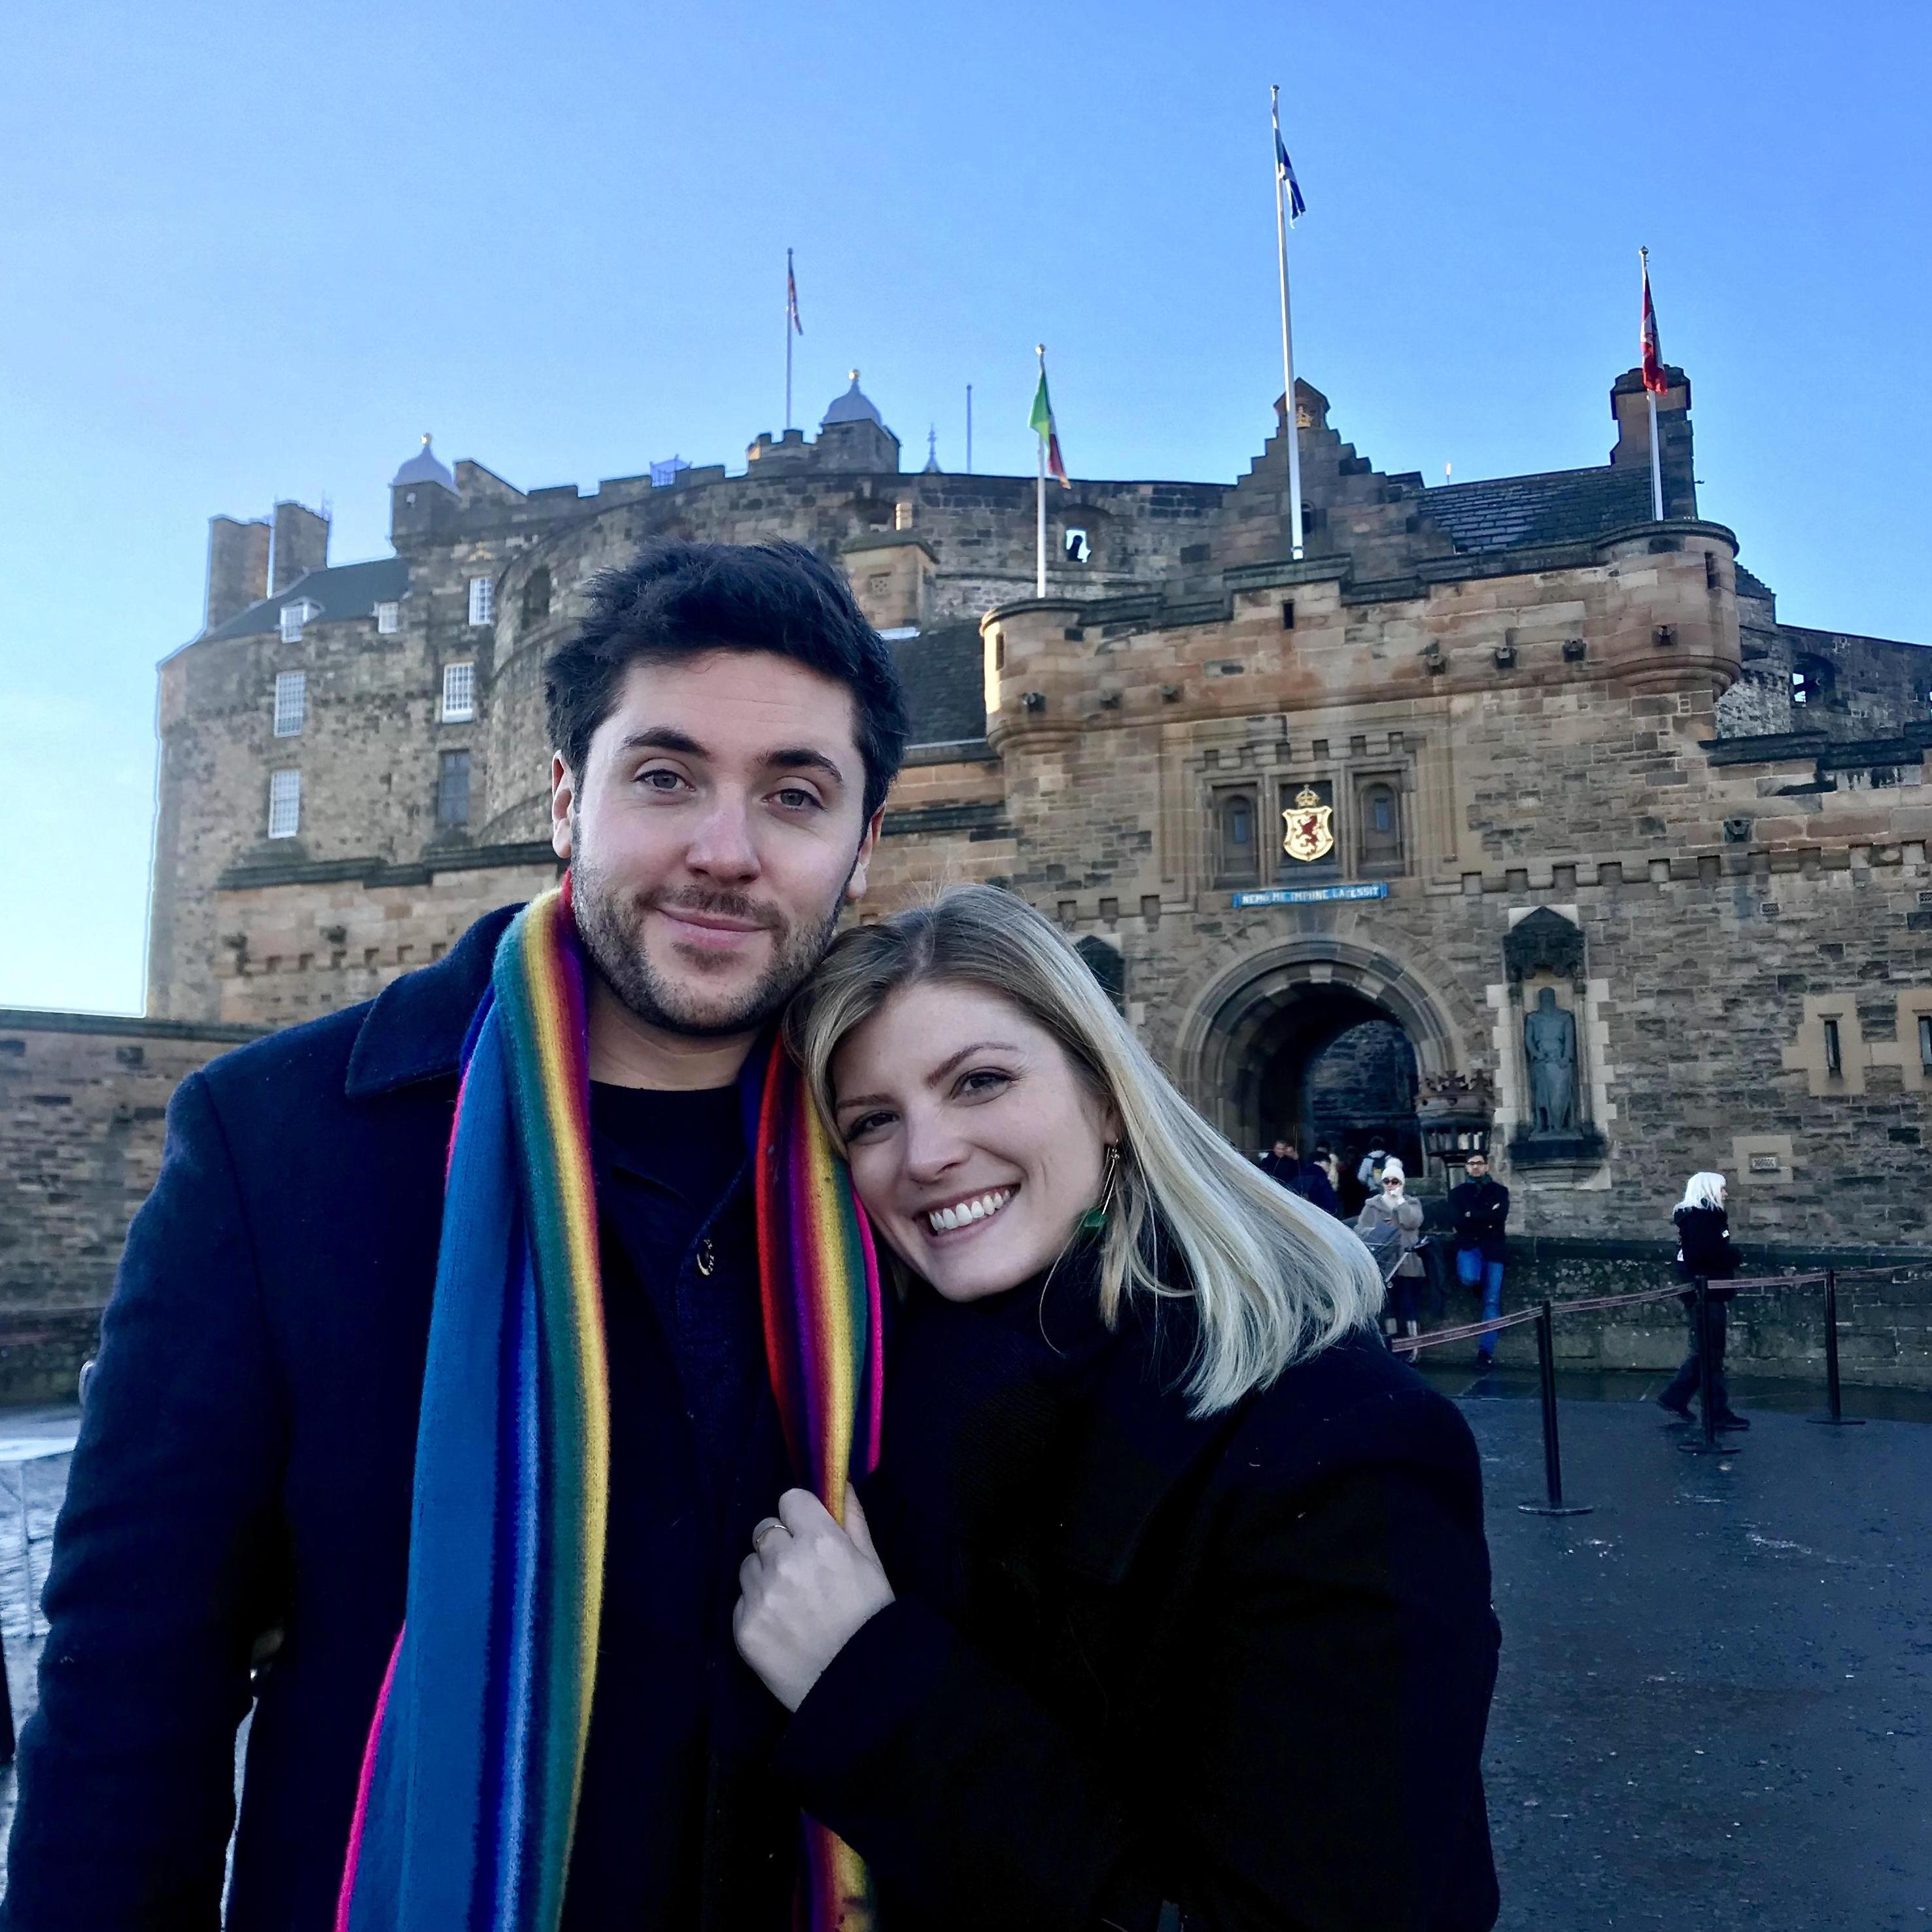 Edinburgh Castle on Christmas Eve
2018